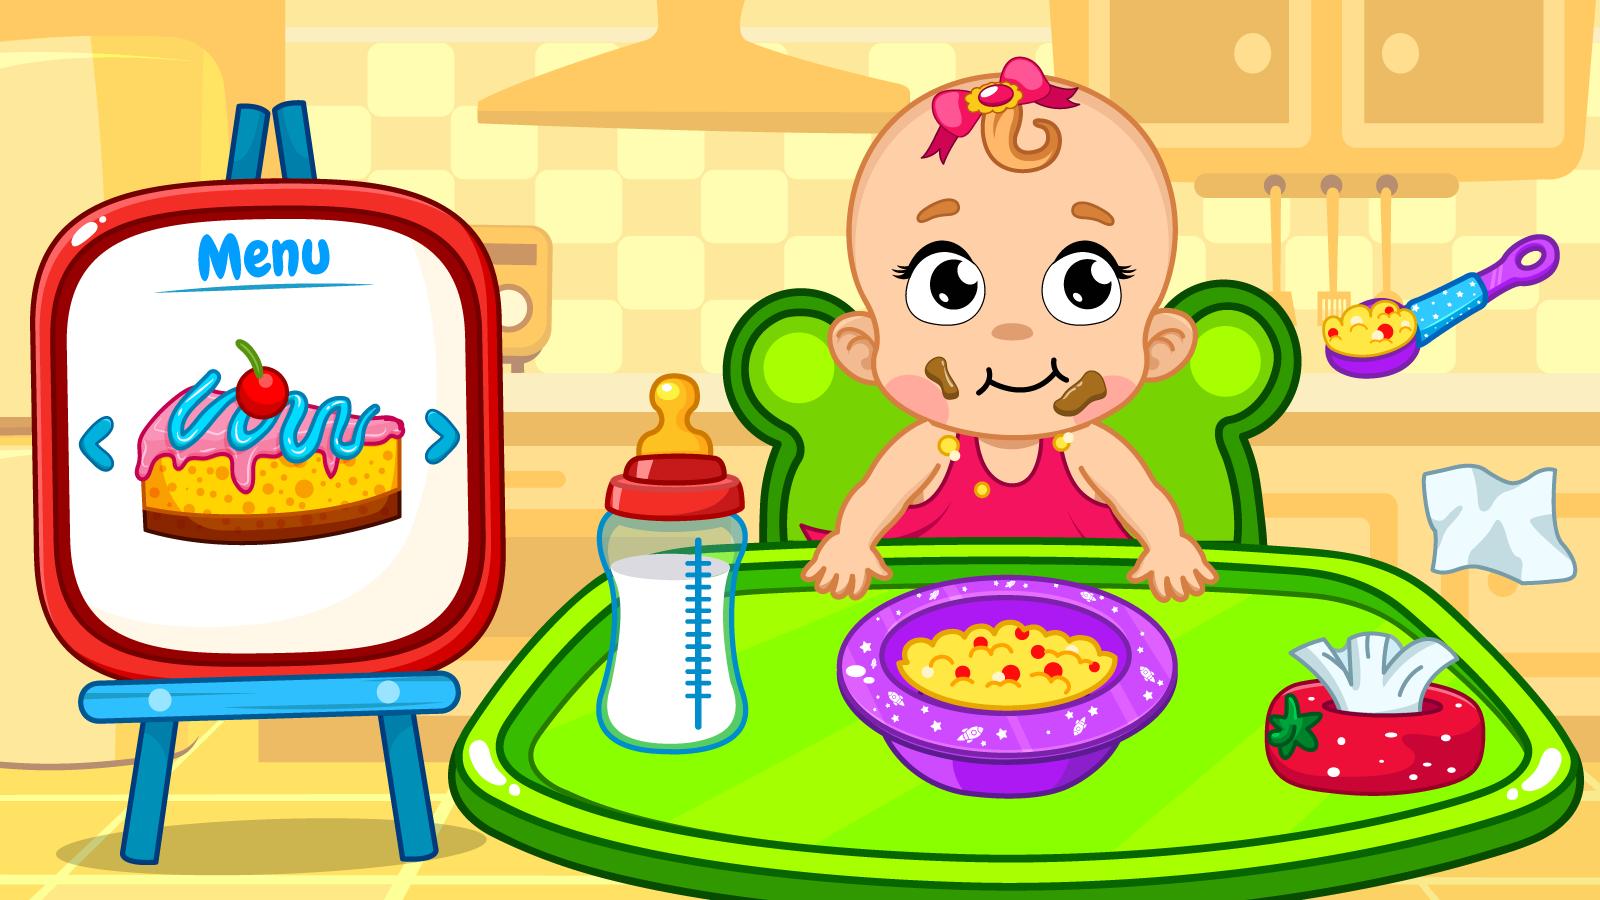 Игра Baby. Baby Care игра. Baby Care Kids games. Baby Care Kids games Android.